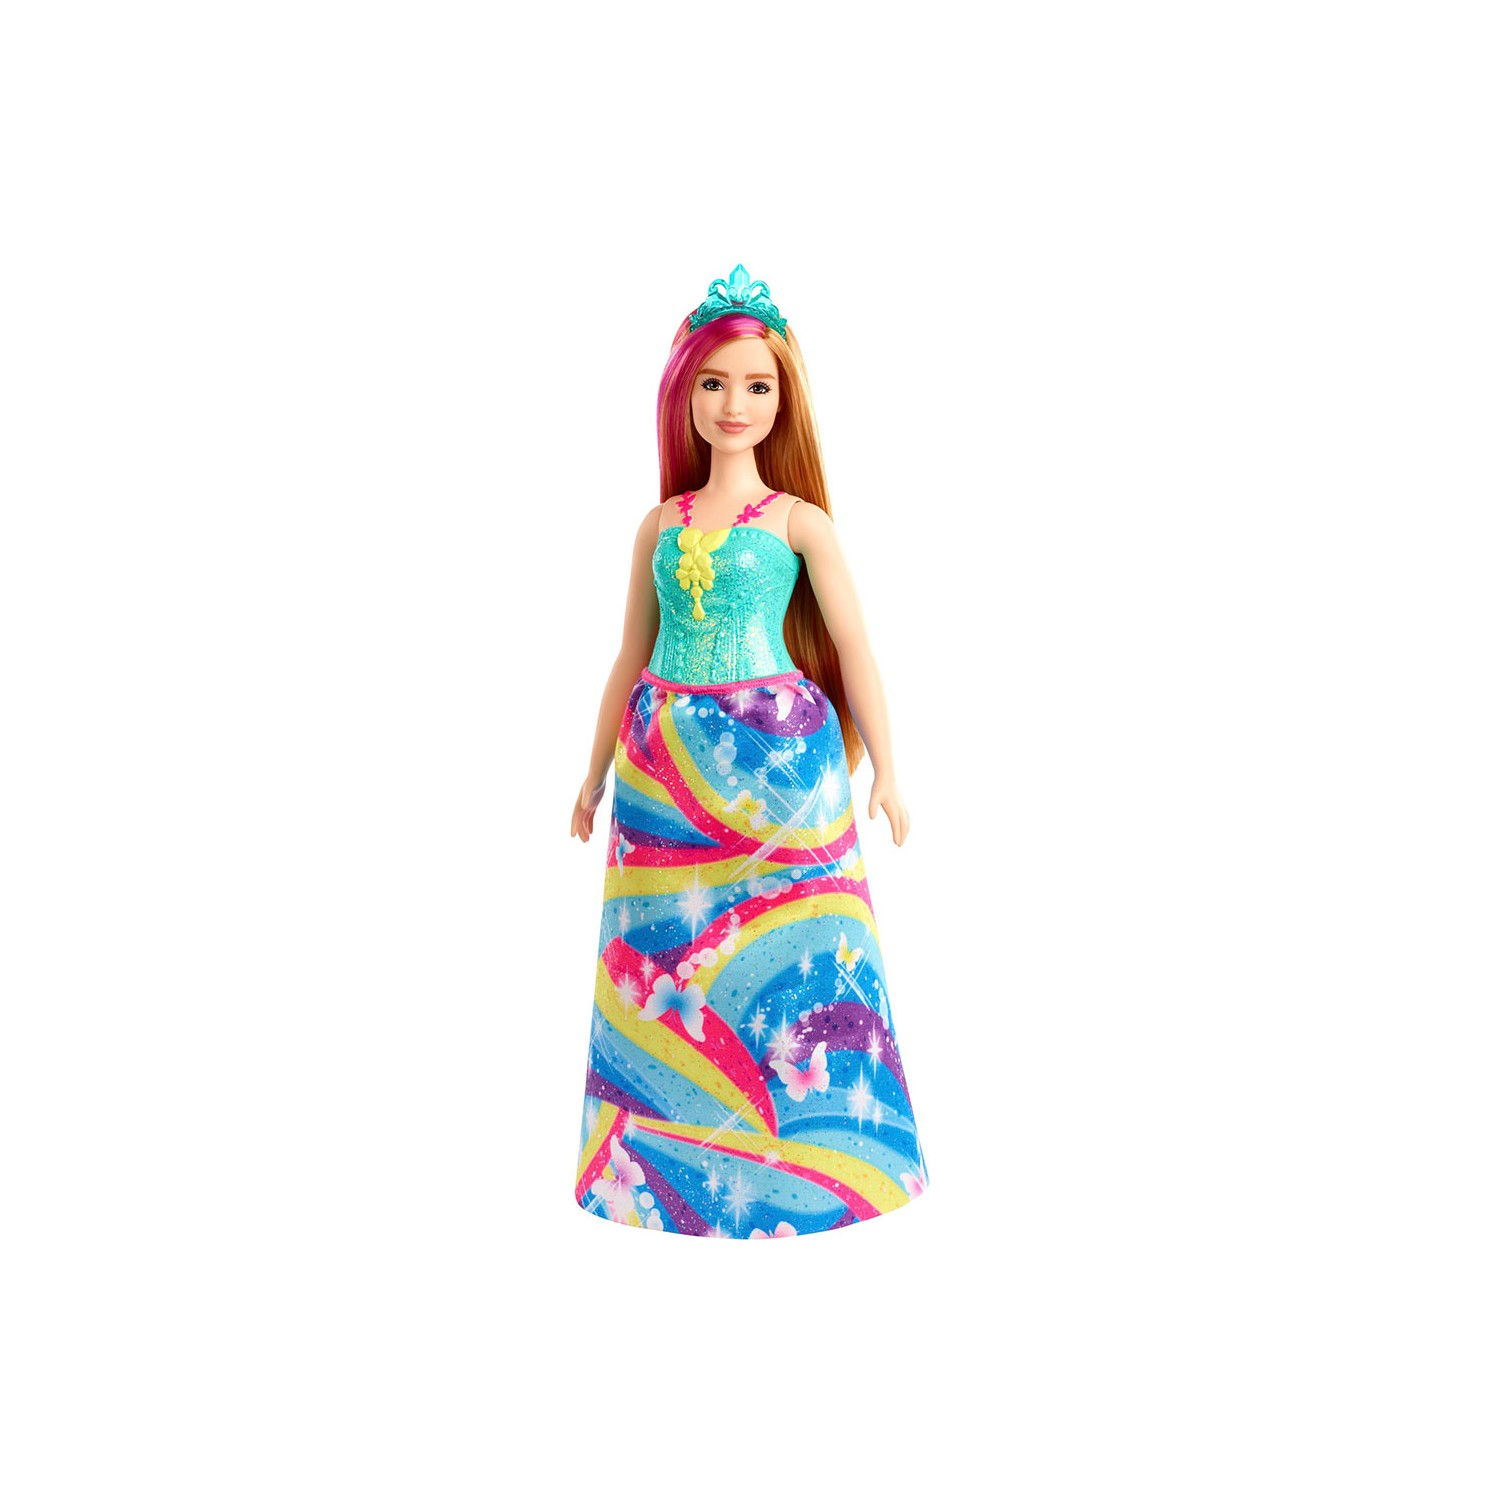 Кукла Barbie Dreamtopia Princess Dolls GJK16 barbie playset dreamtopia sweetsville